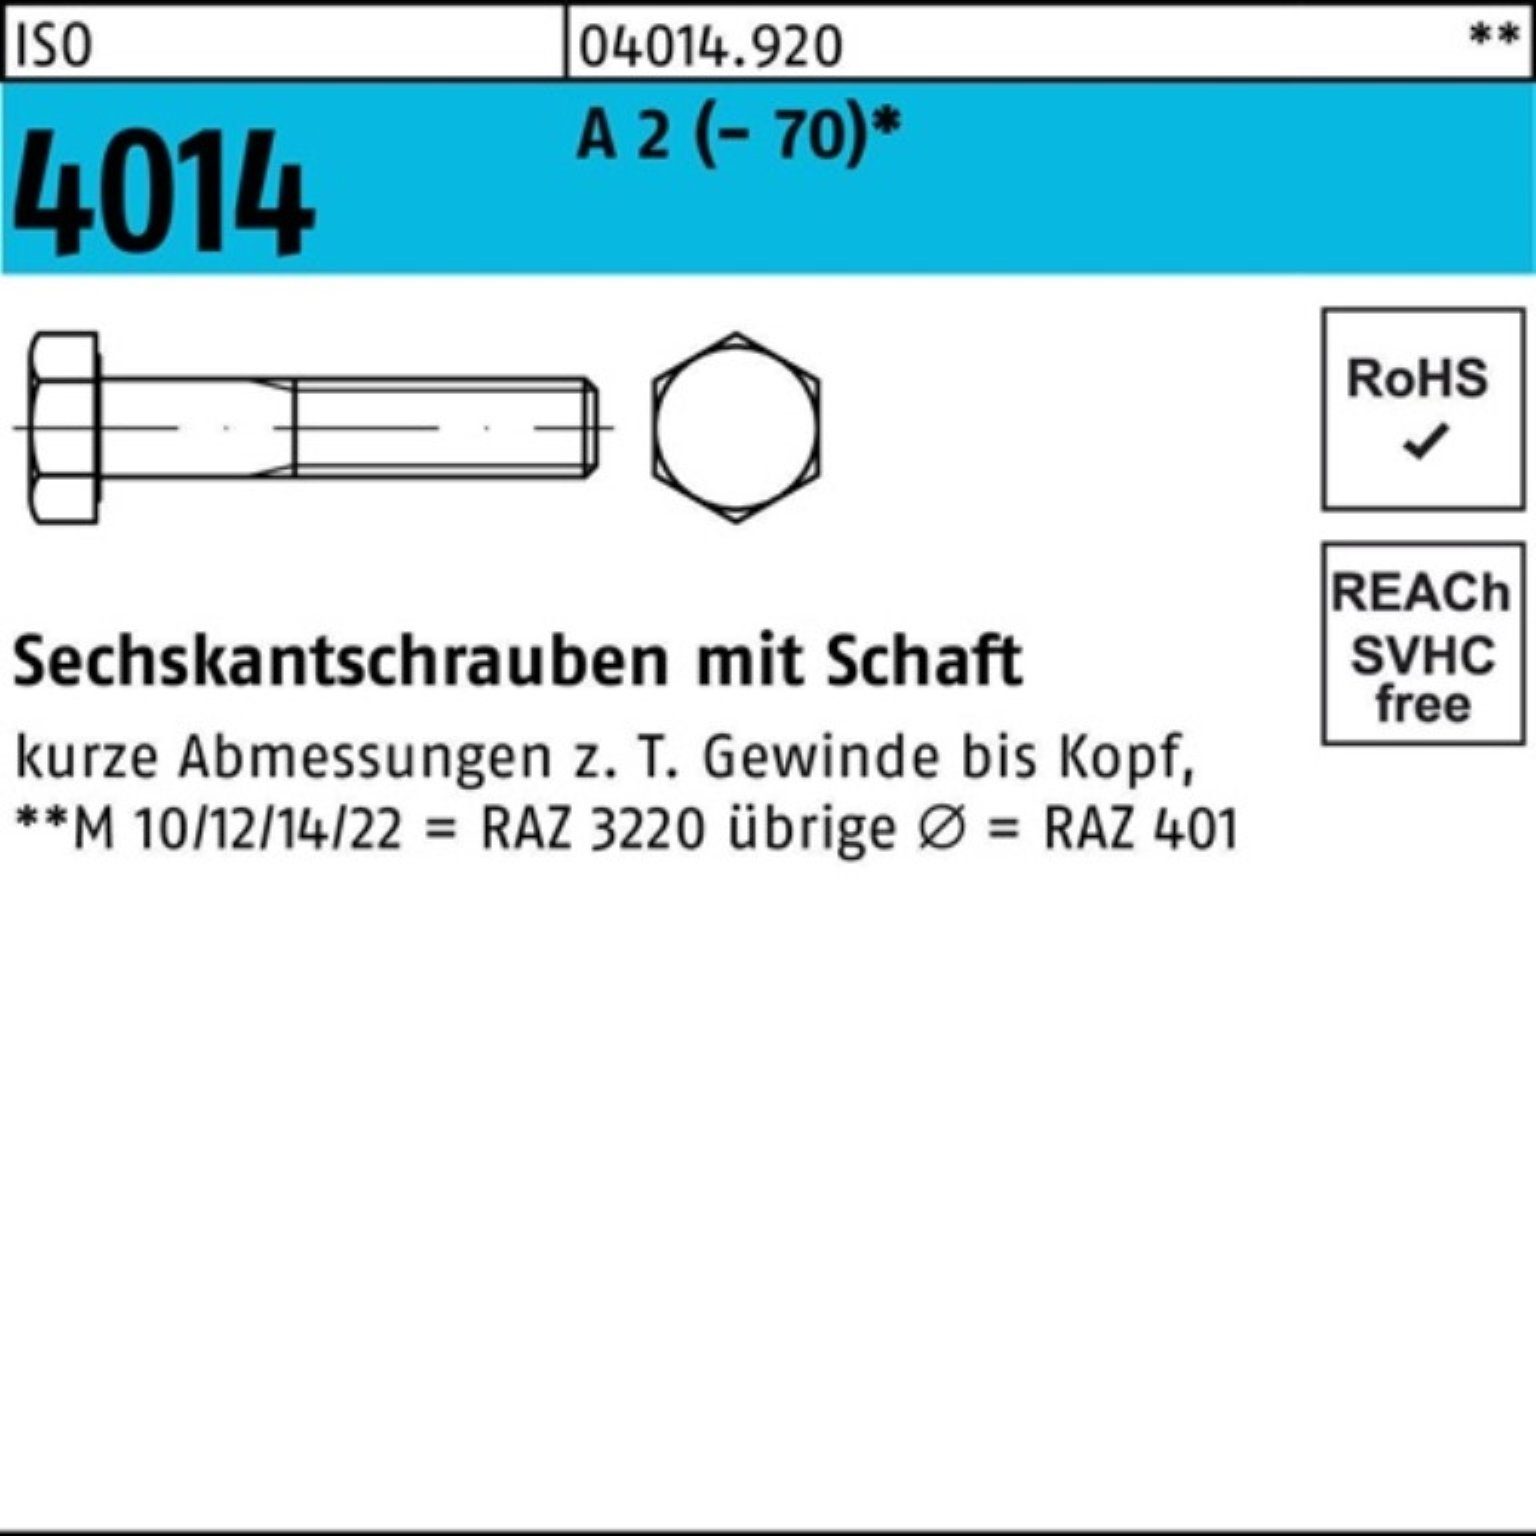 Bufab Sechskantschraube 100er Pack Sechskantschraube ISO 4014 Schaft M12x 180 A 2 (70) 1 St